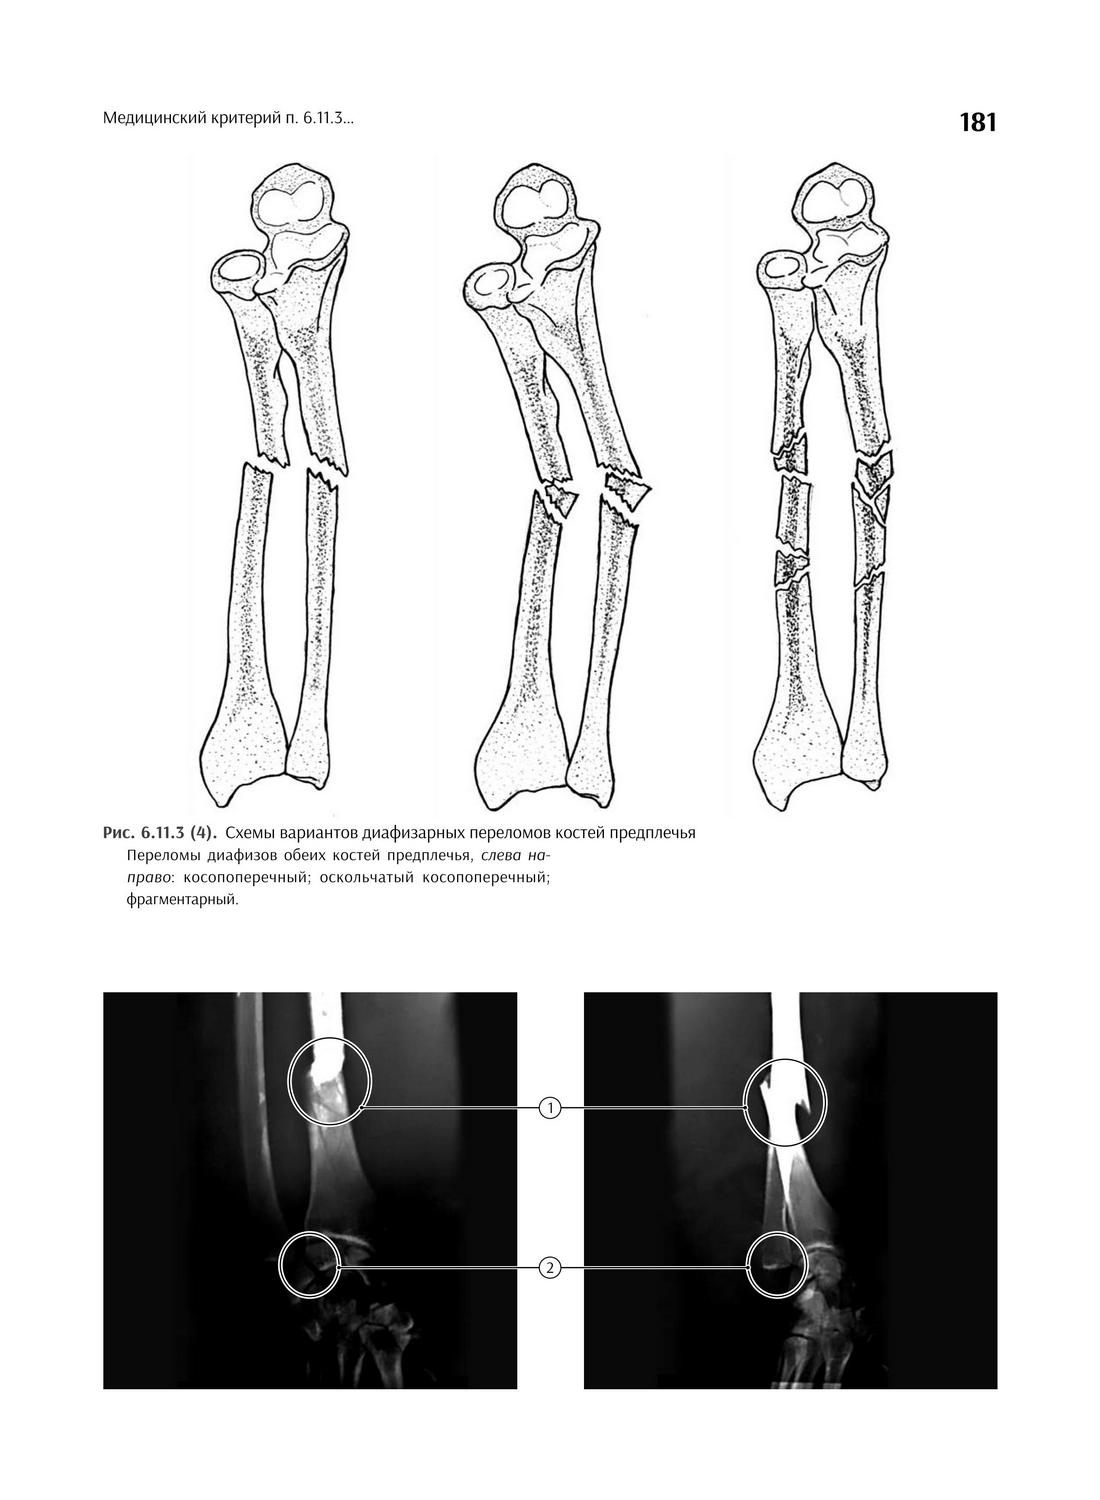 Рис. 6.11.3 (4). Схемы вариантов диафизарных переломов костей предплечья